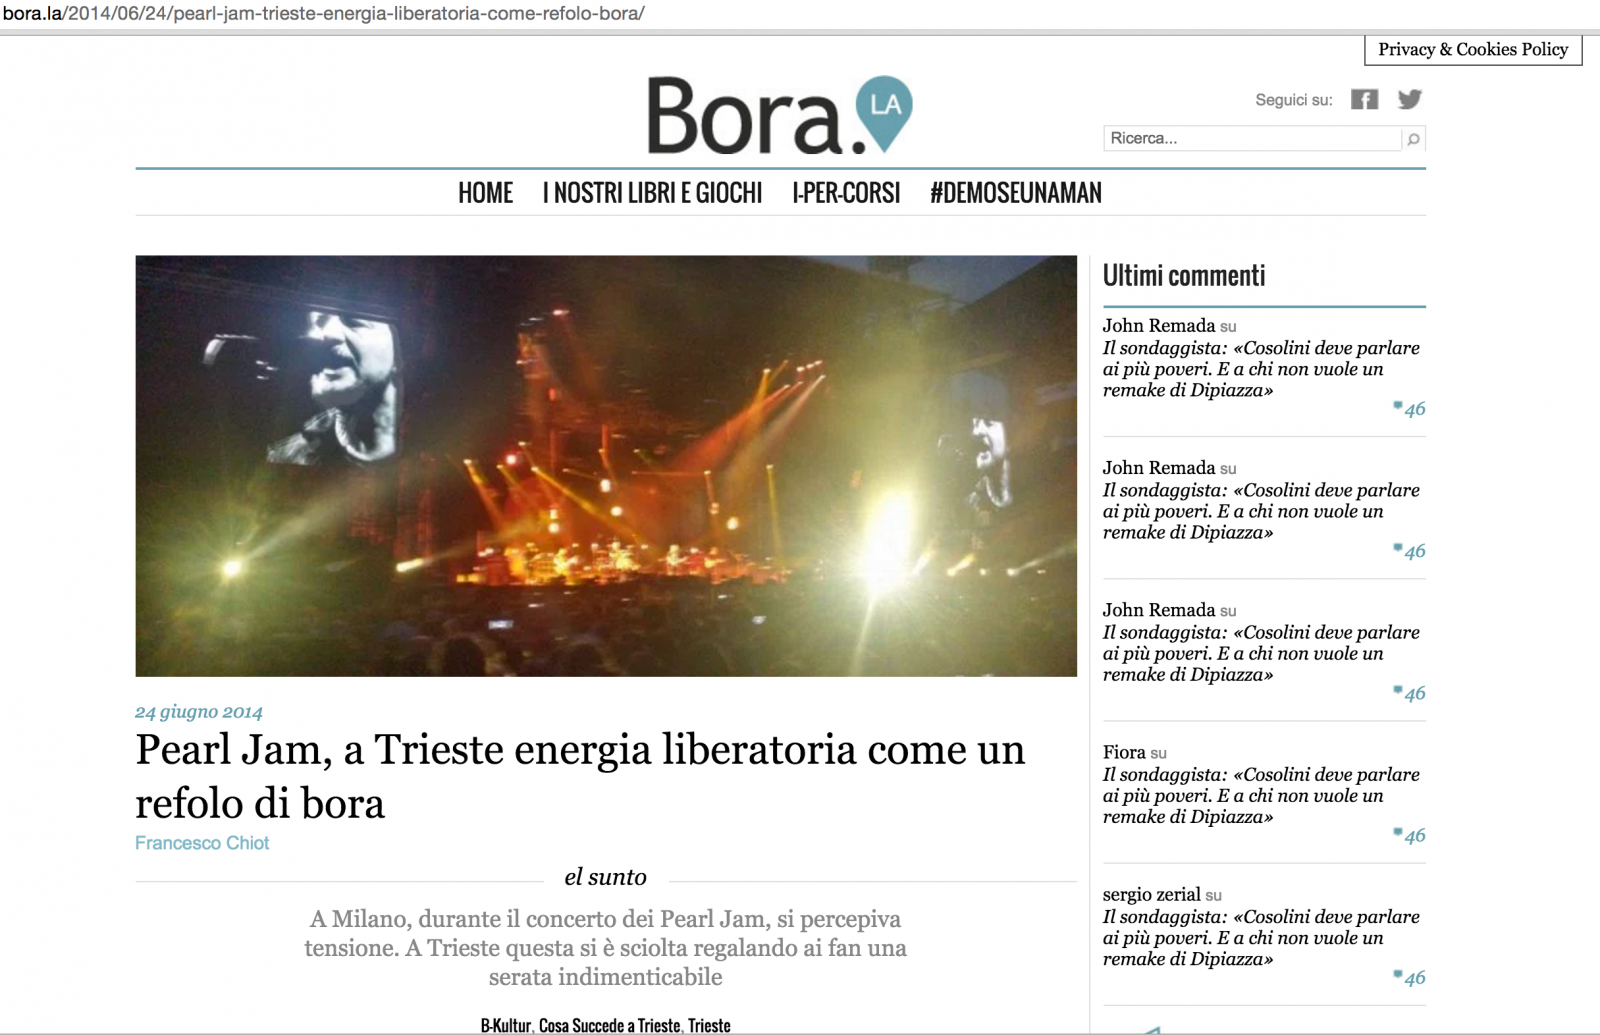 tearsheets - bora.la 24/06/2014